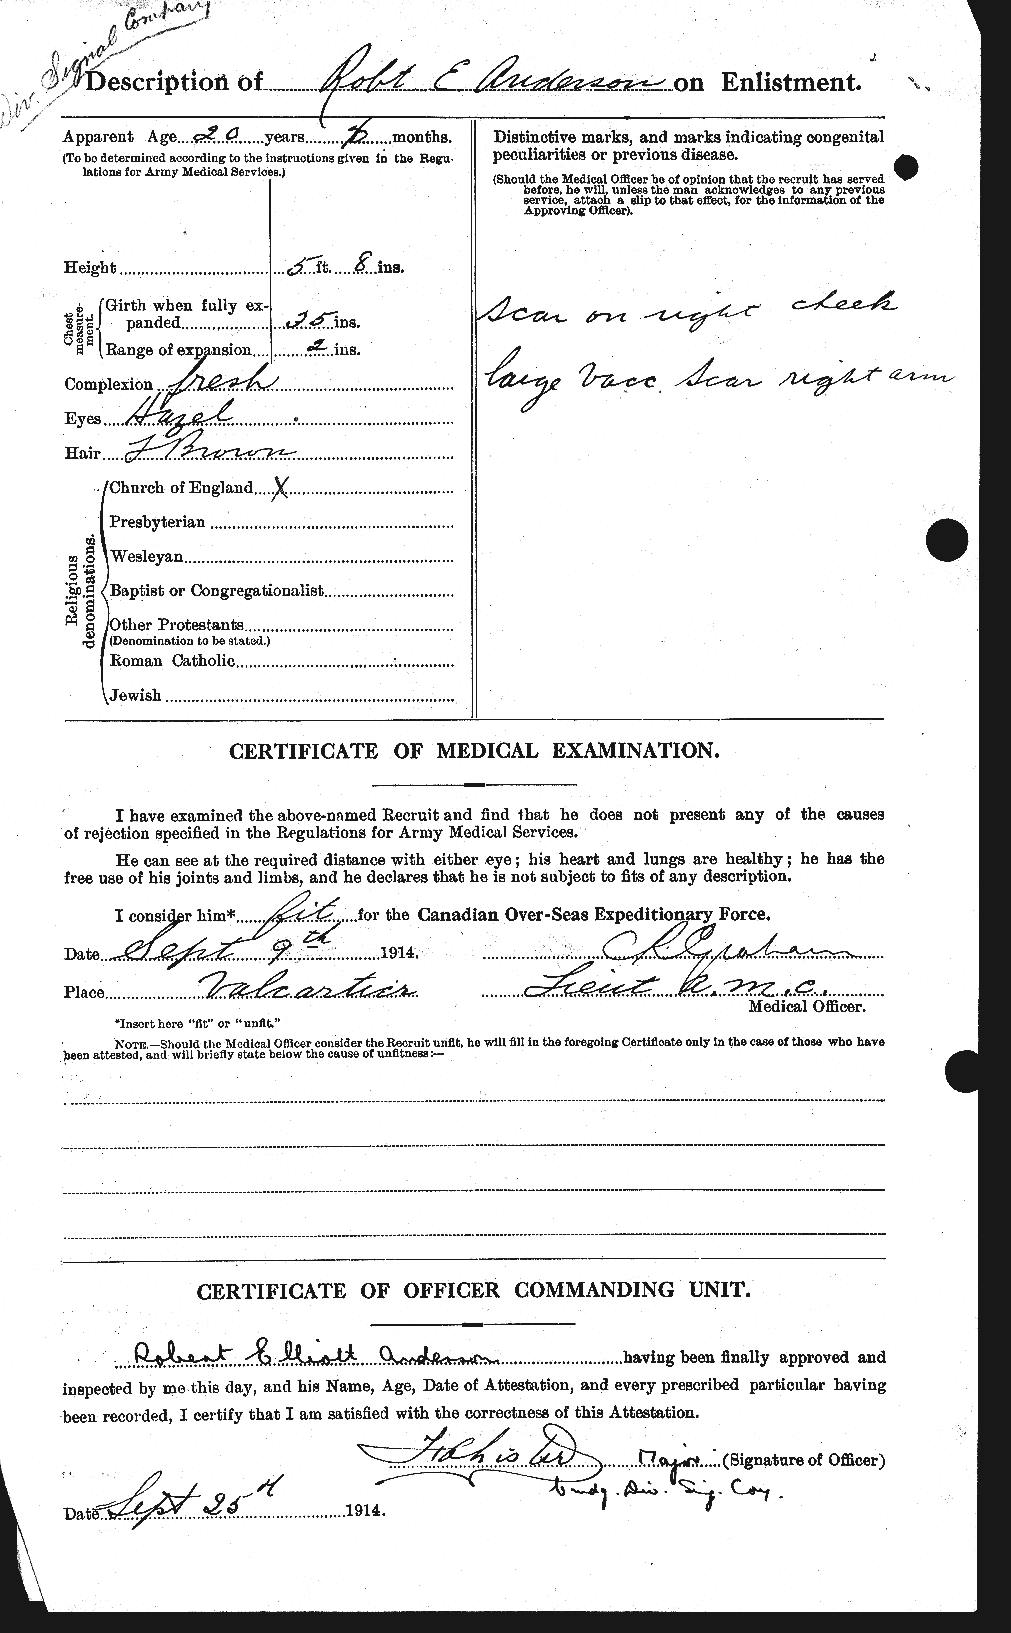 Dossiers du Personnel de la Première Guerre mondiale - CEC 207261b